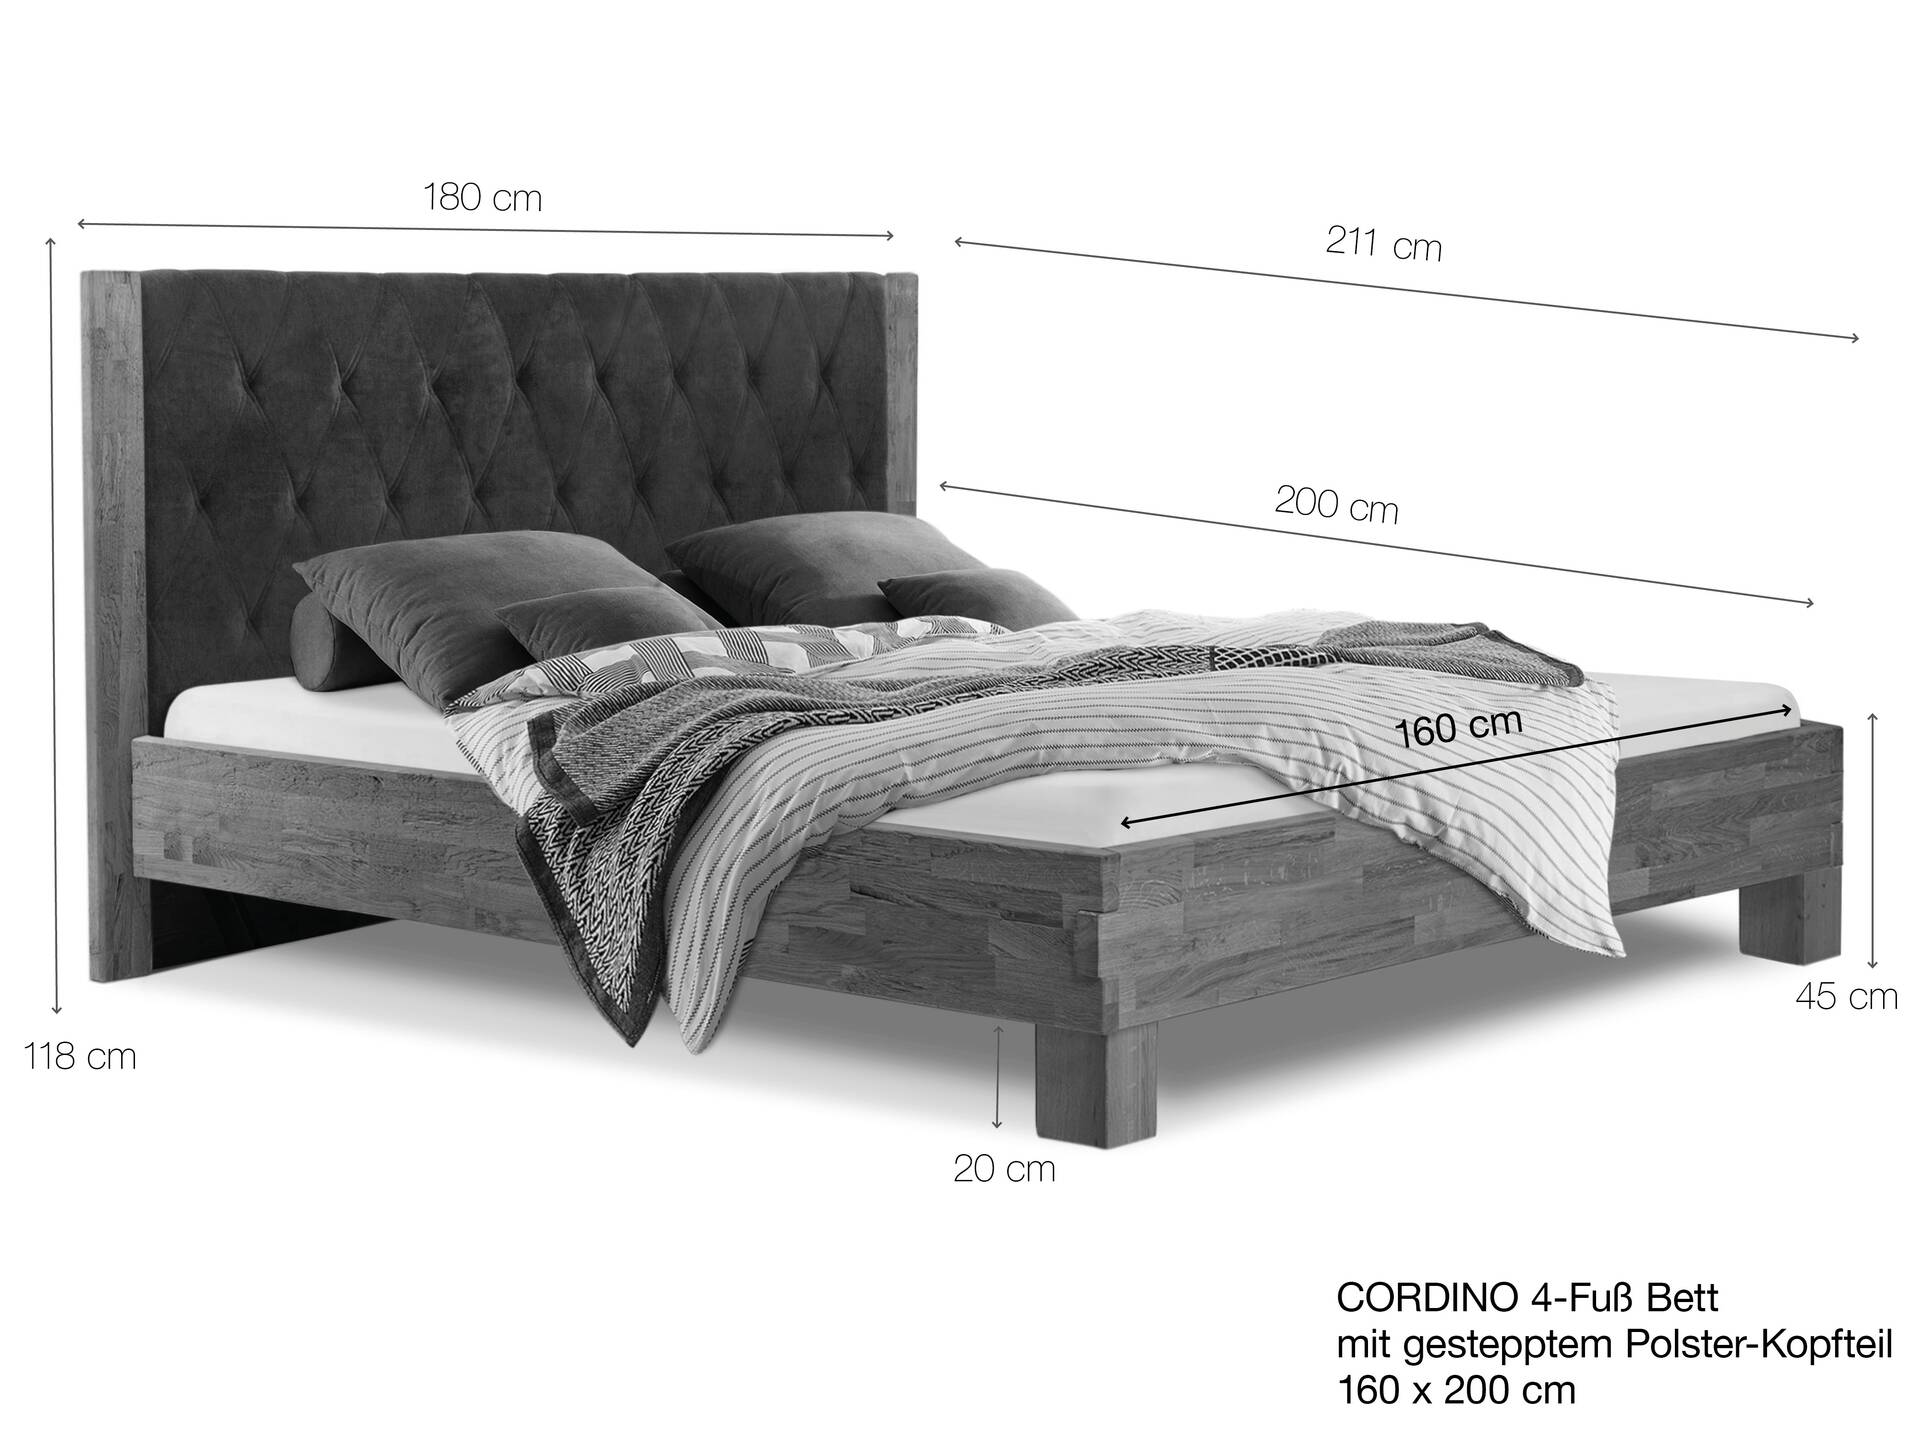 CORDINO 4-Fuß-Bett aus Eiche mit gestepptem Polster-Kopfteil, Material Massivholz 160 x 200 cm | Eiche unbehandelt | Stoff Braun | gebürstet